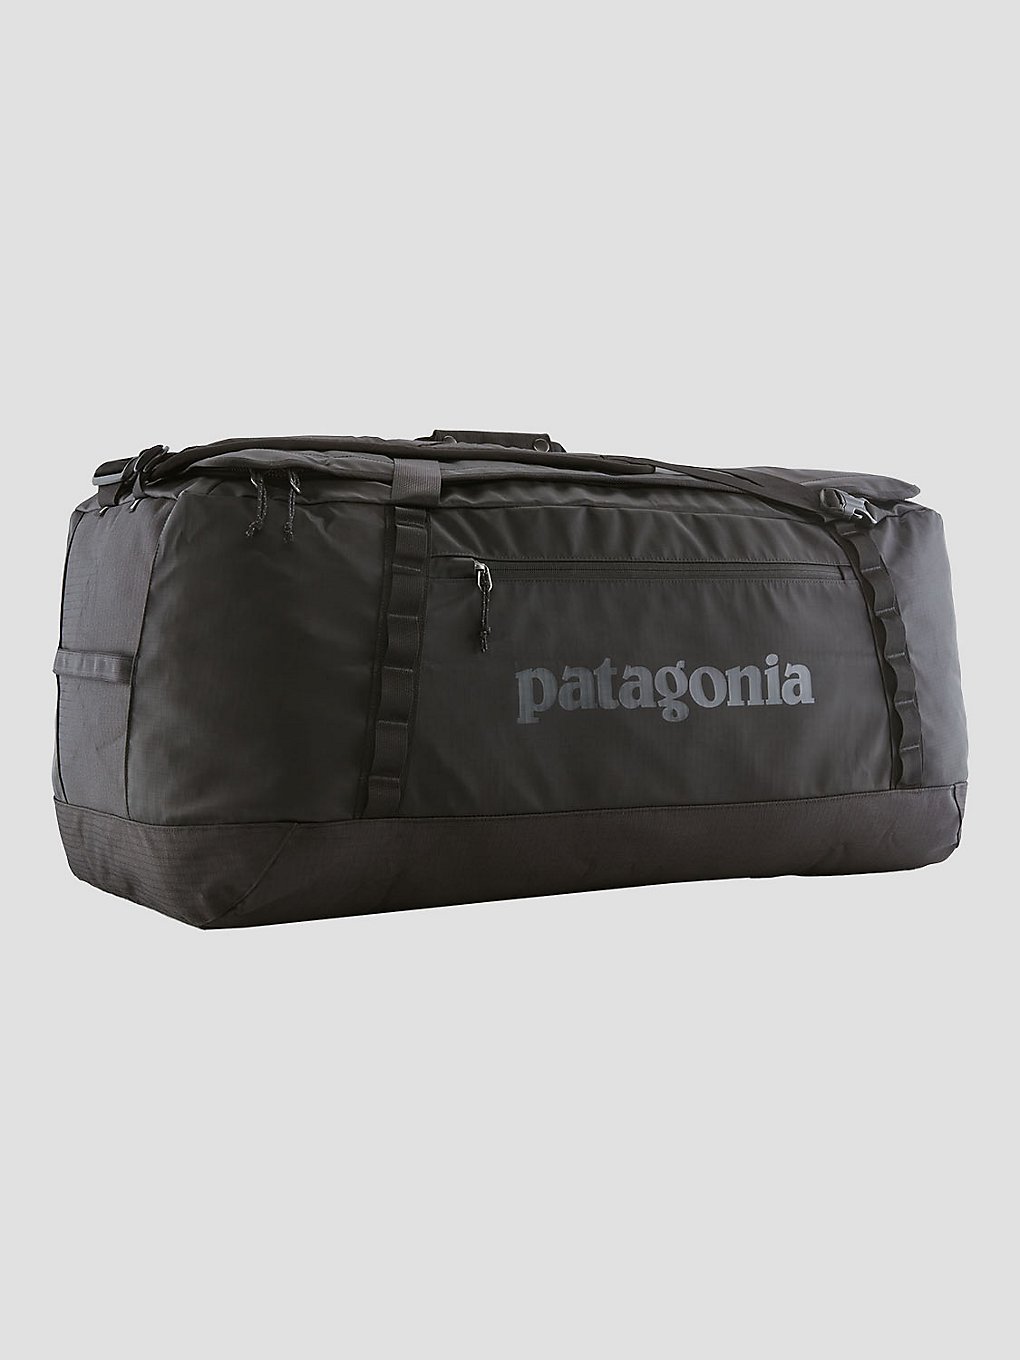 Patagonia Black Hole Duffel 100L Travel Bag black